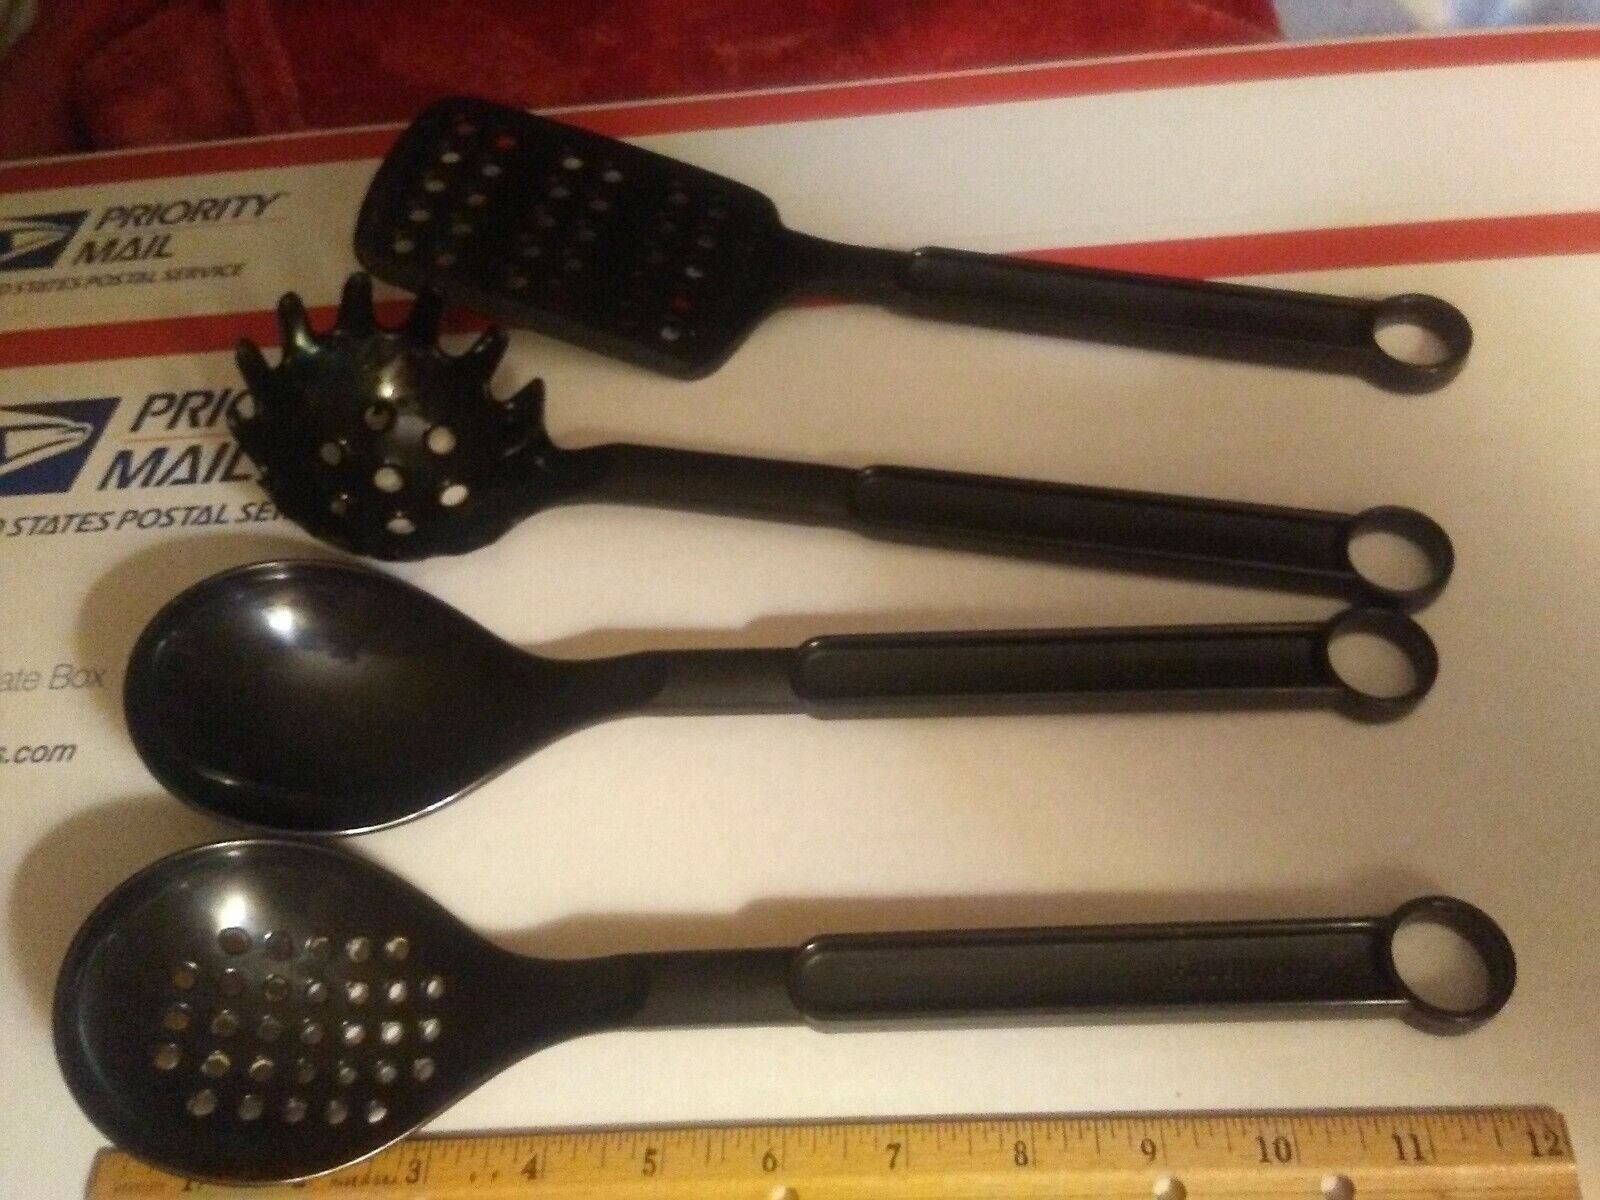 Farberware utensils set - $23.74